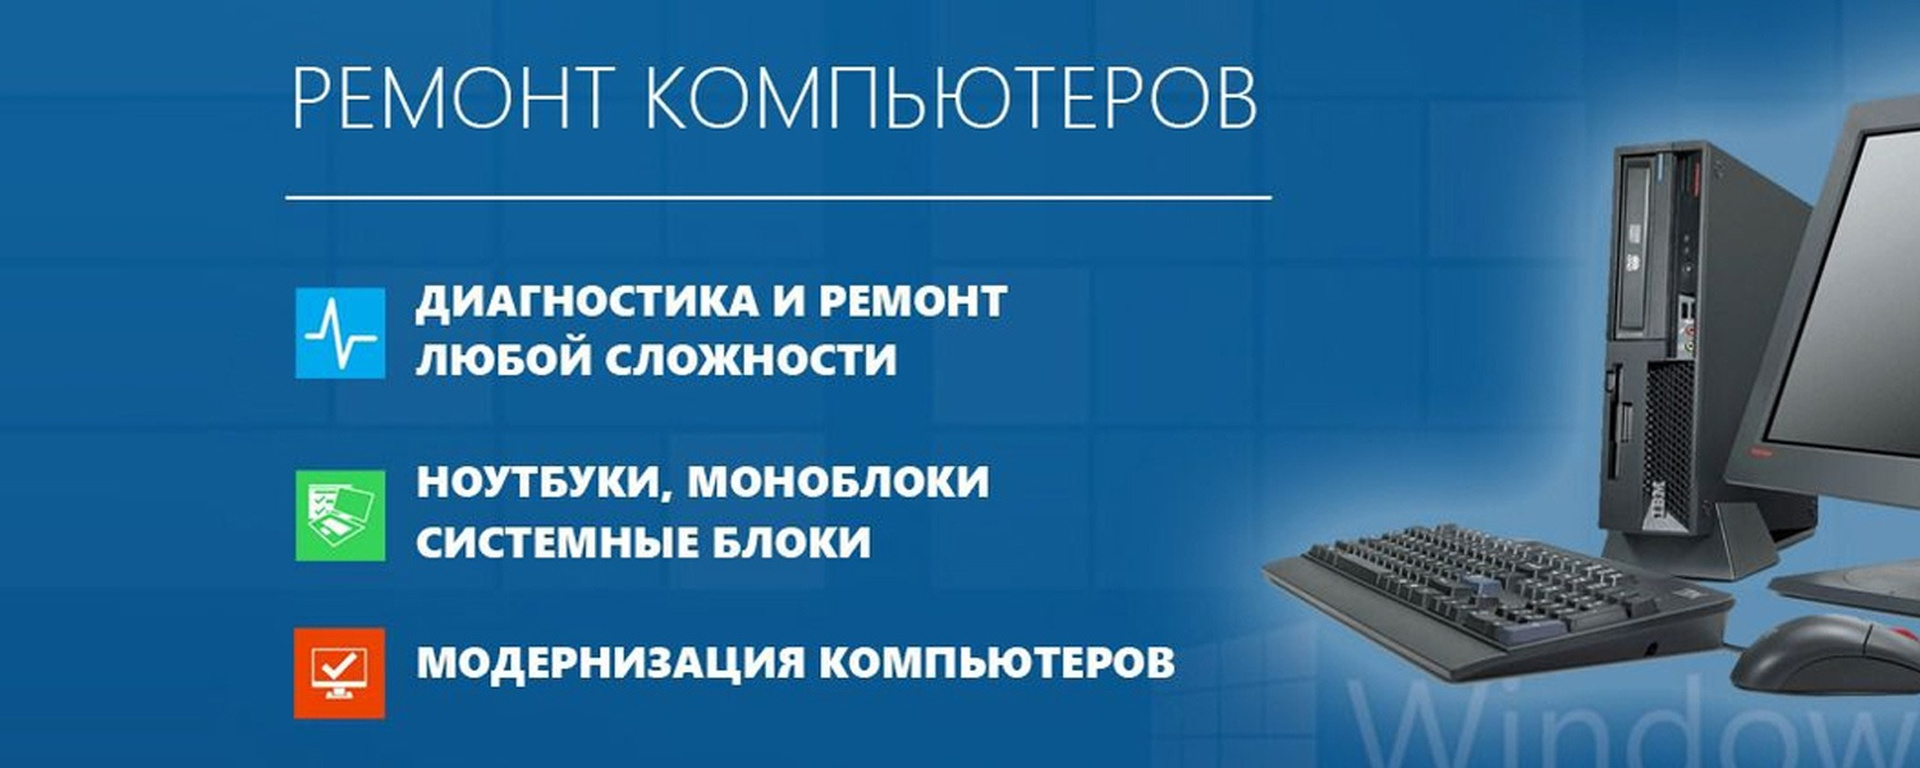 Компьютерный сервис в Москве и Московской области